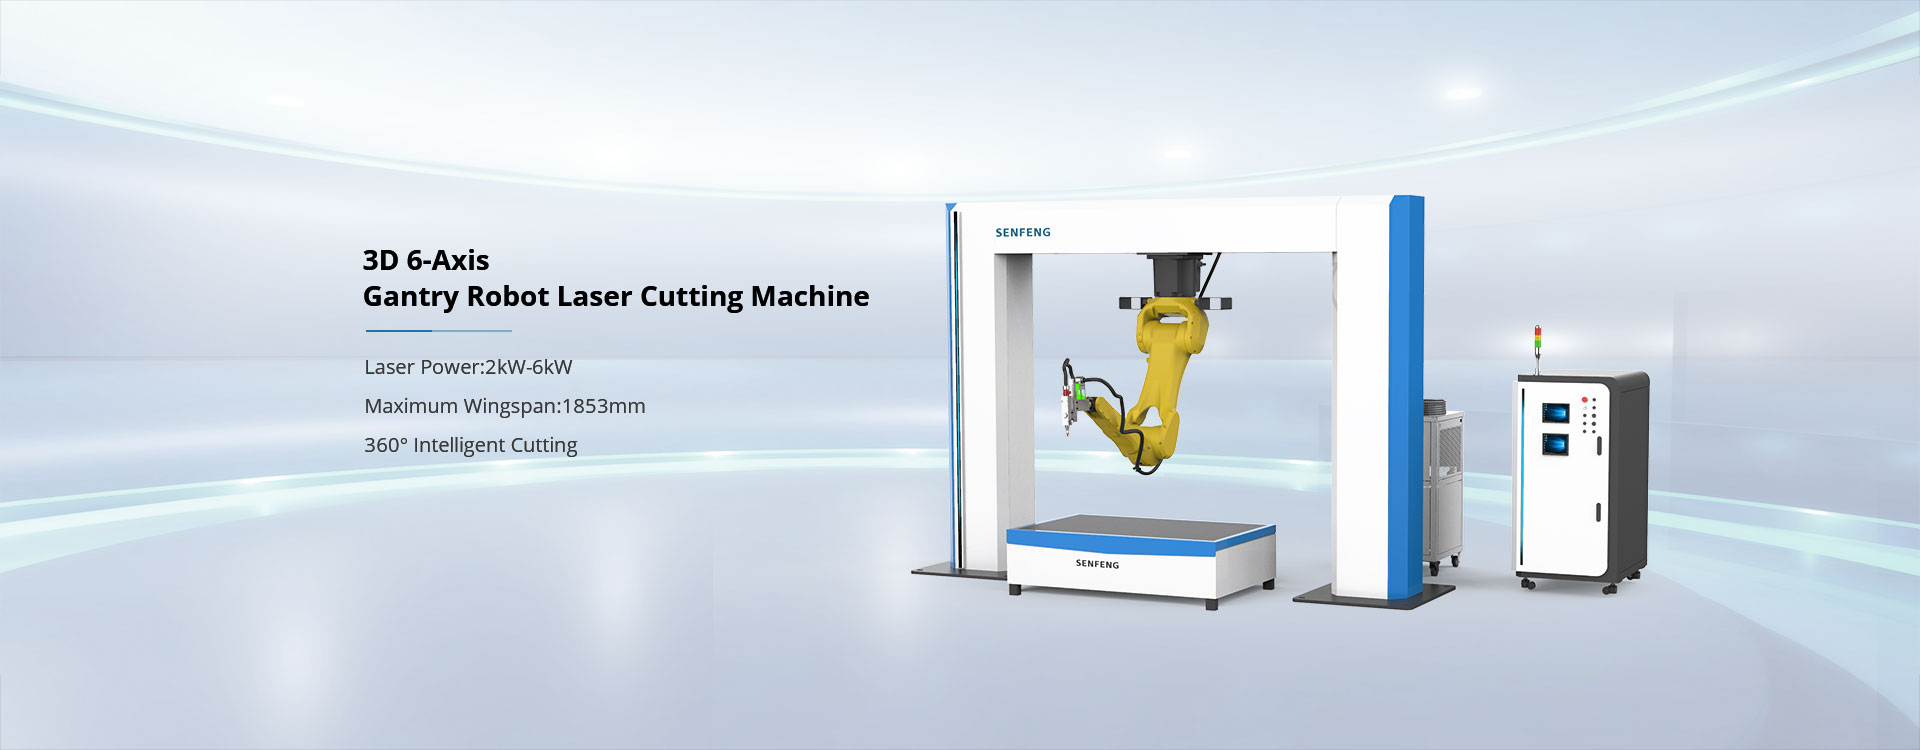 Gantry robot laser cutting machine 